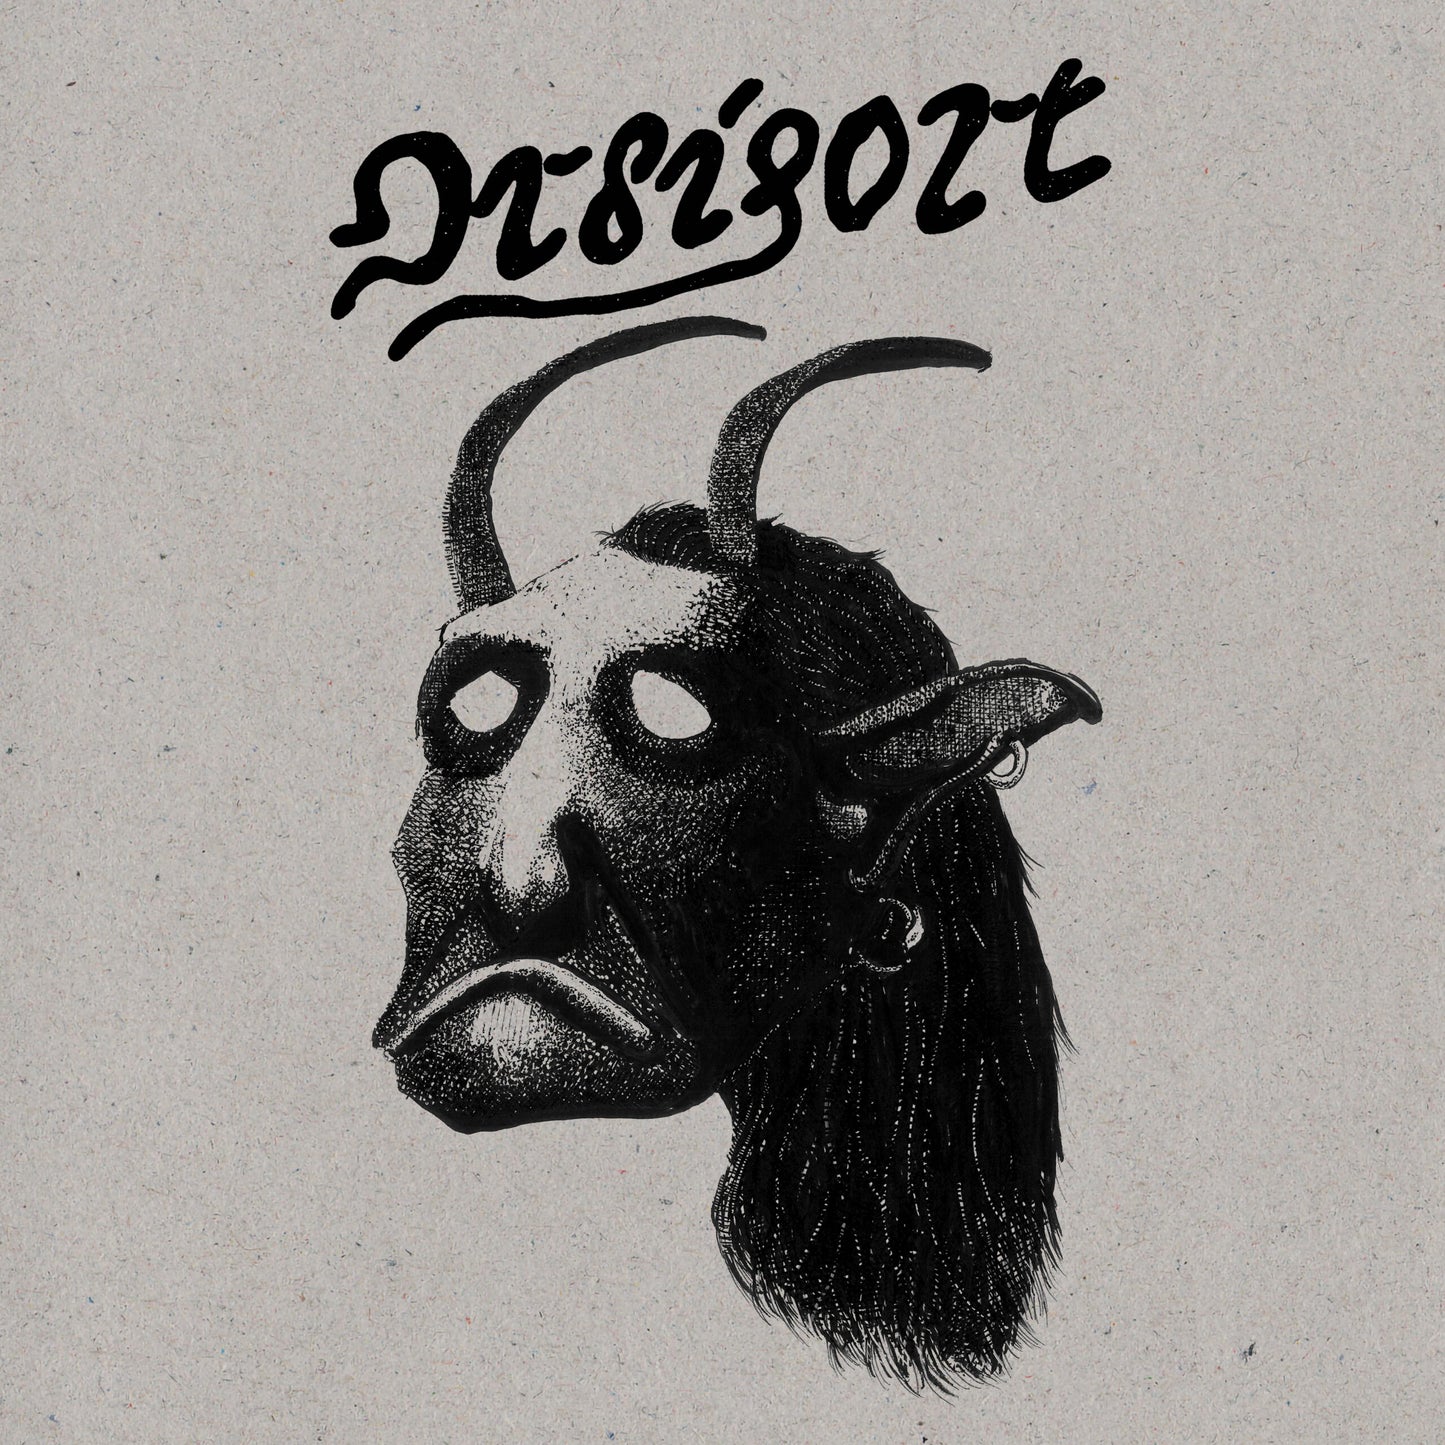 Ordigort – Demo LP